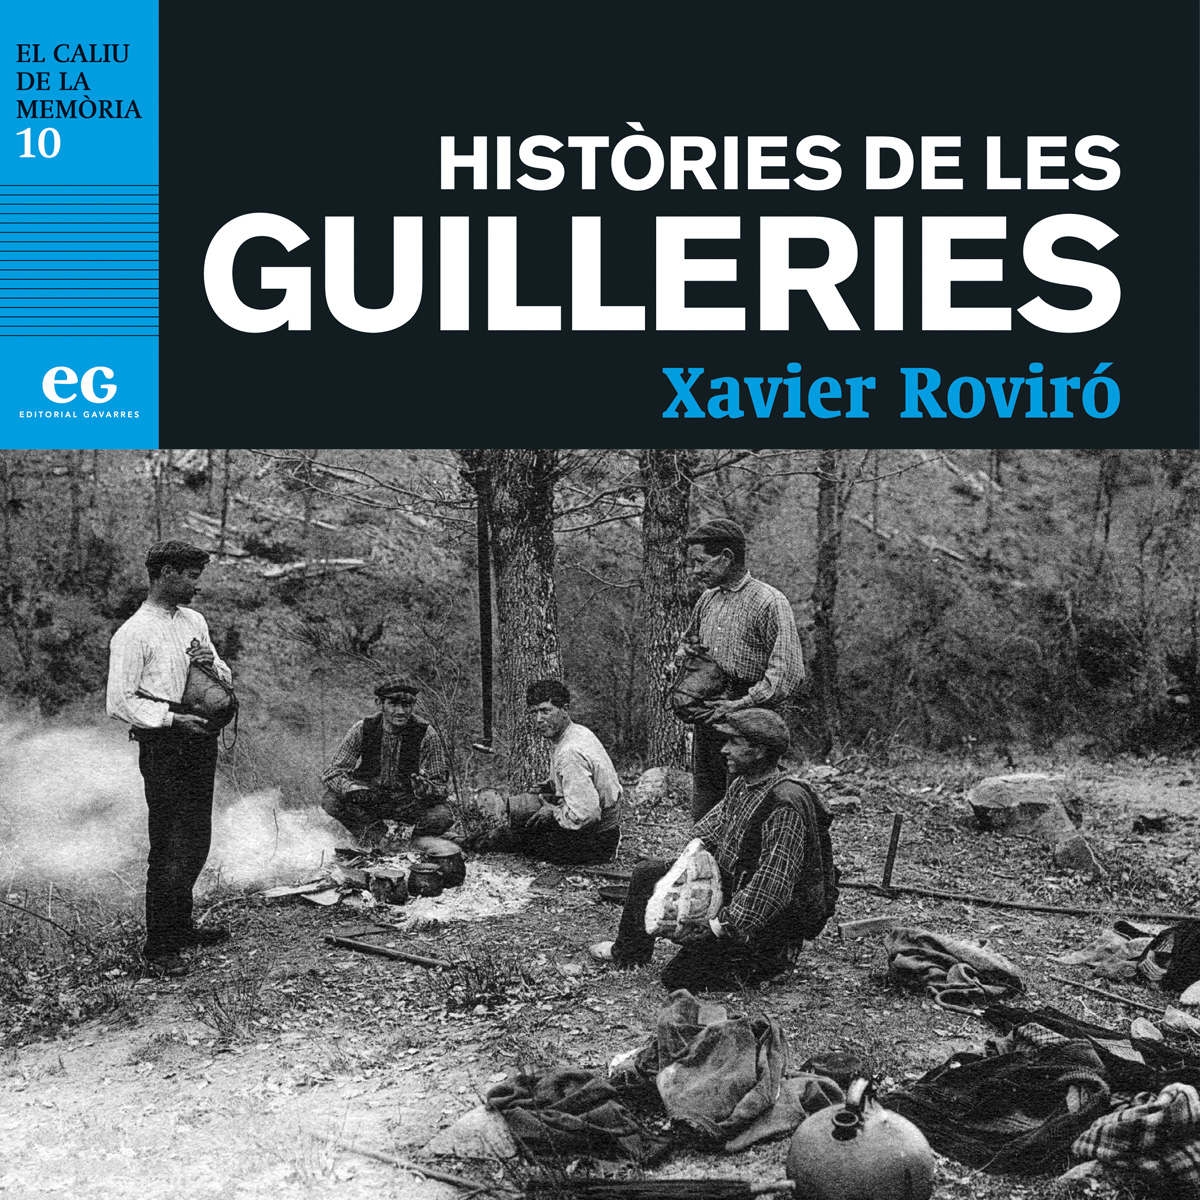 Presentació del llibre ‘Històries de les Guilleries’ de Xavier Roviró